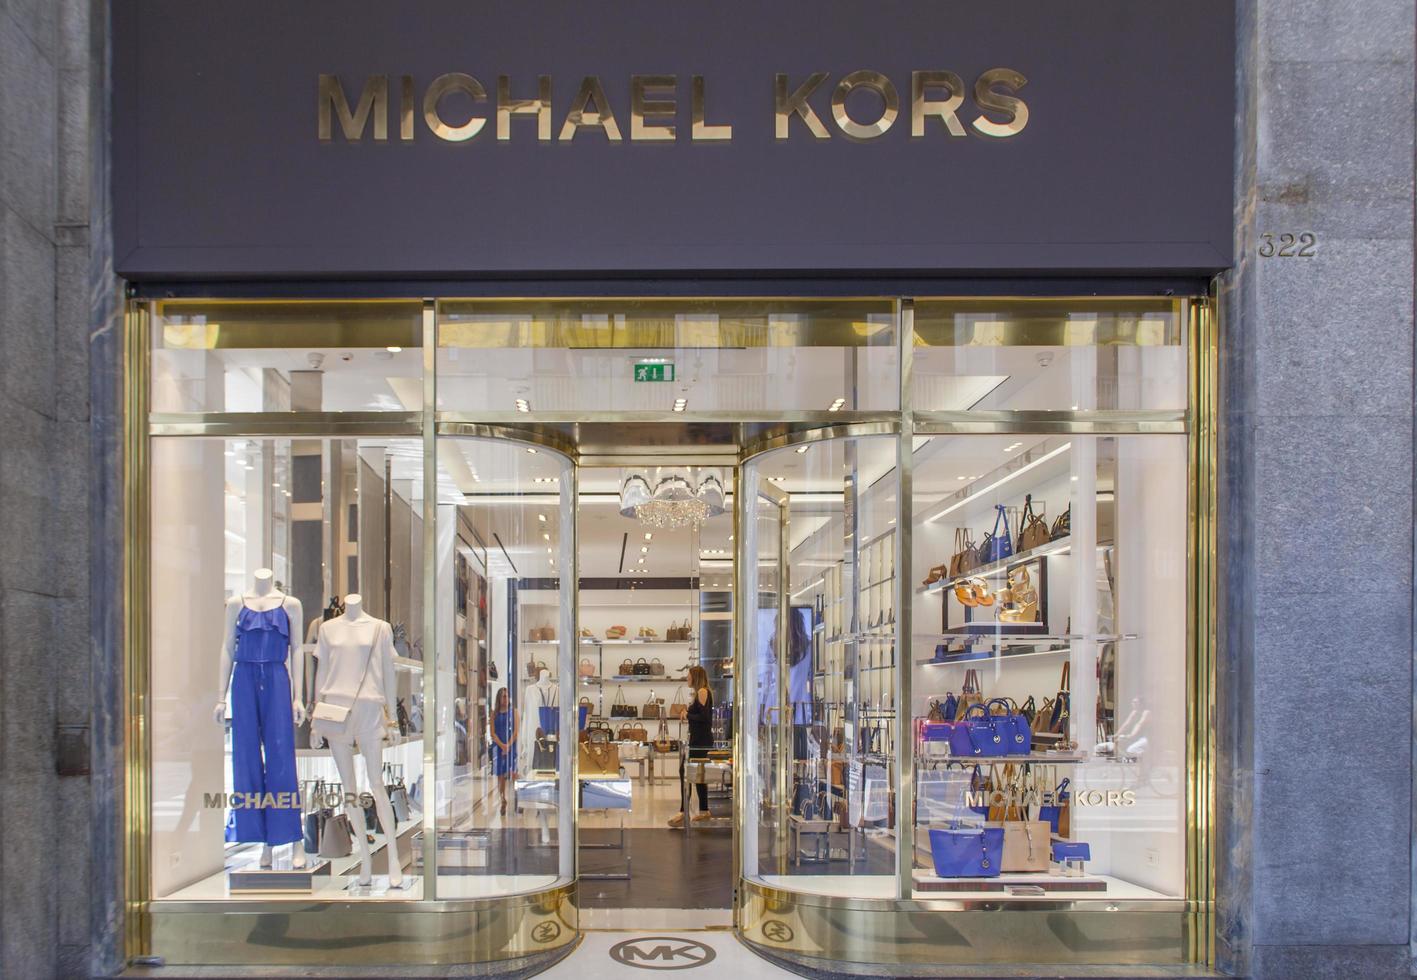 Turin, Italien, 3. Juni 2015 - Blick auf Michael Kors Shop in Turin, Italien. michael kors ist ein in new york ansässiger modedesigner, der für das designen klassischer amerikanischer sportbekleidung für frauen bekannt ist. foto